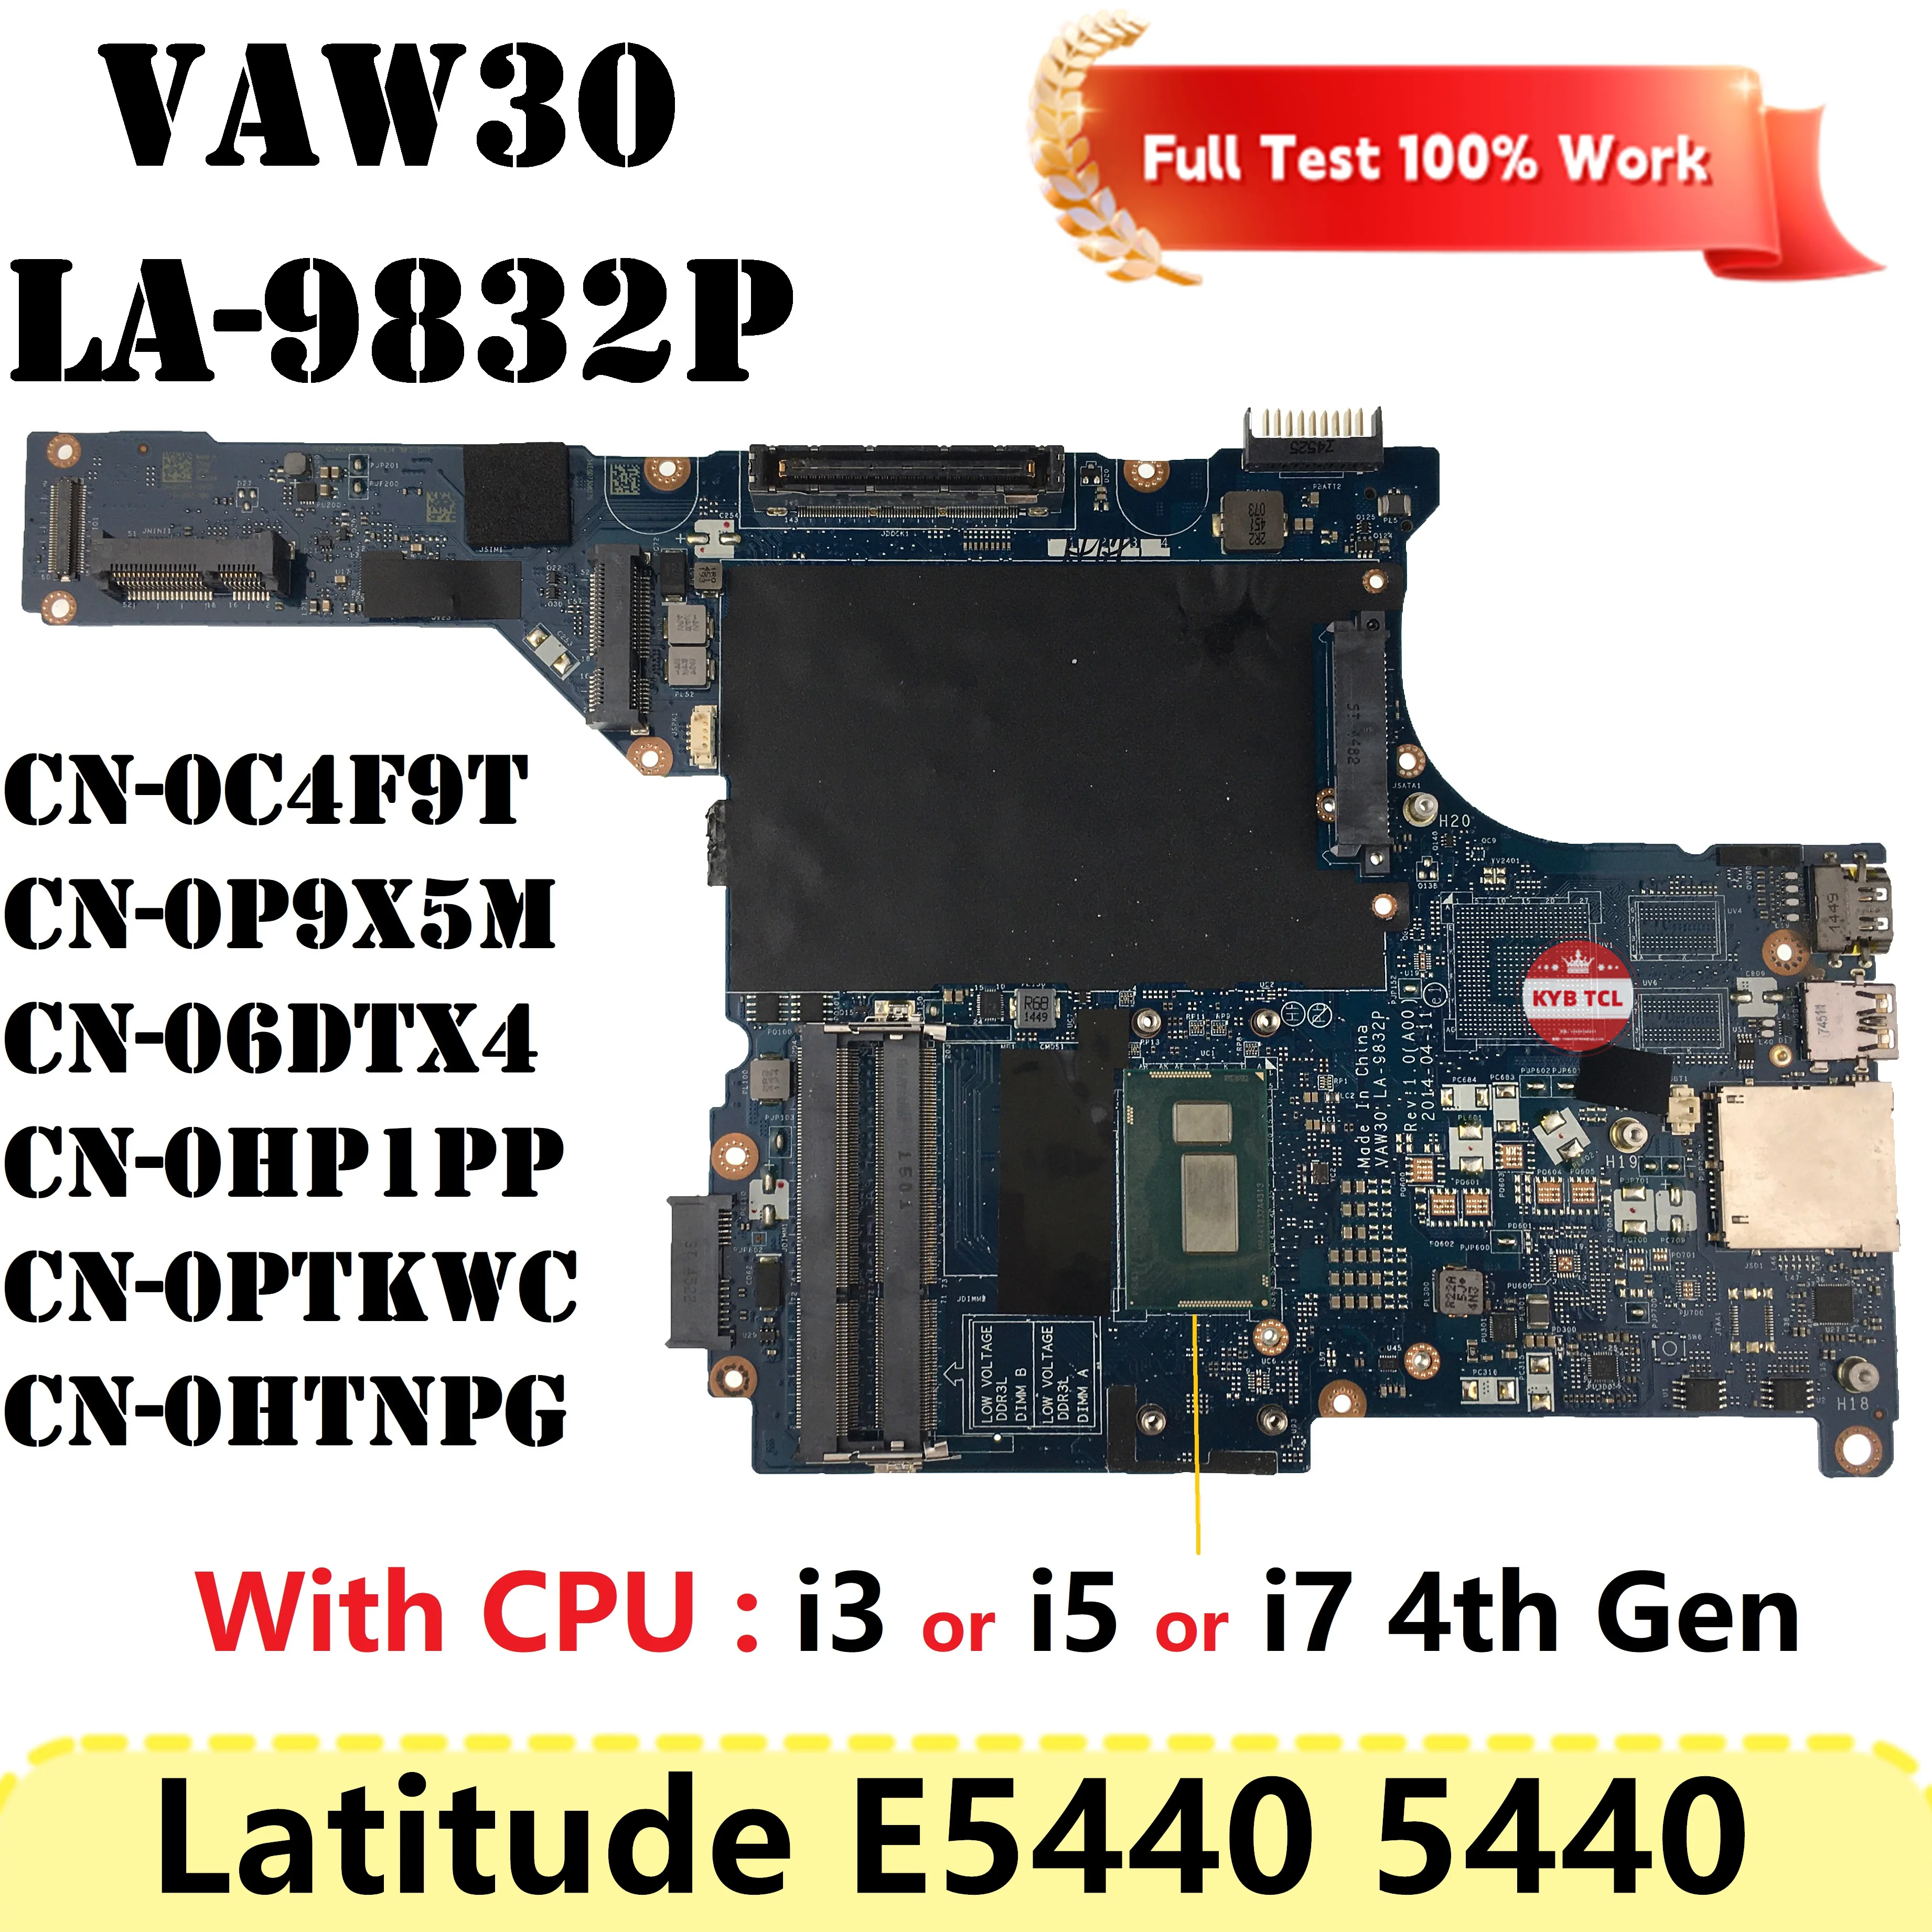 

For DELL Latitude E5440 5440 Laptop Motherboard VAW30 LA-9832P Mainboard 0PTKWC CN-06DTX4 06DTX4 0P9X5M W I3 I5 I7 4th Gen CPU